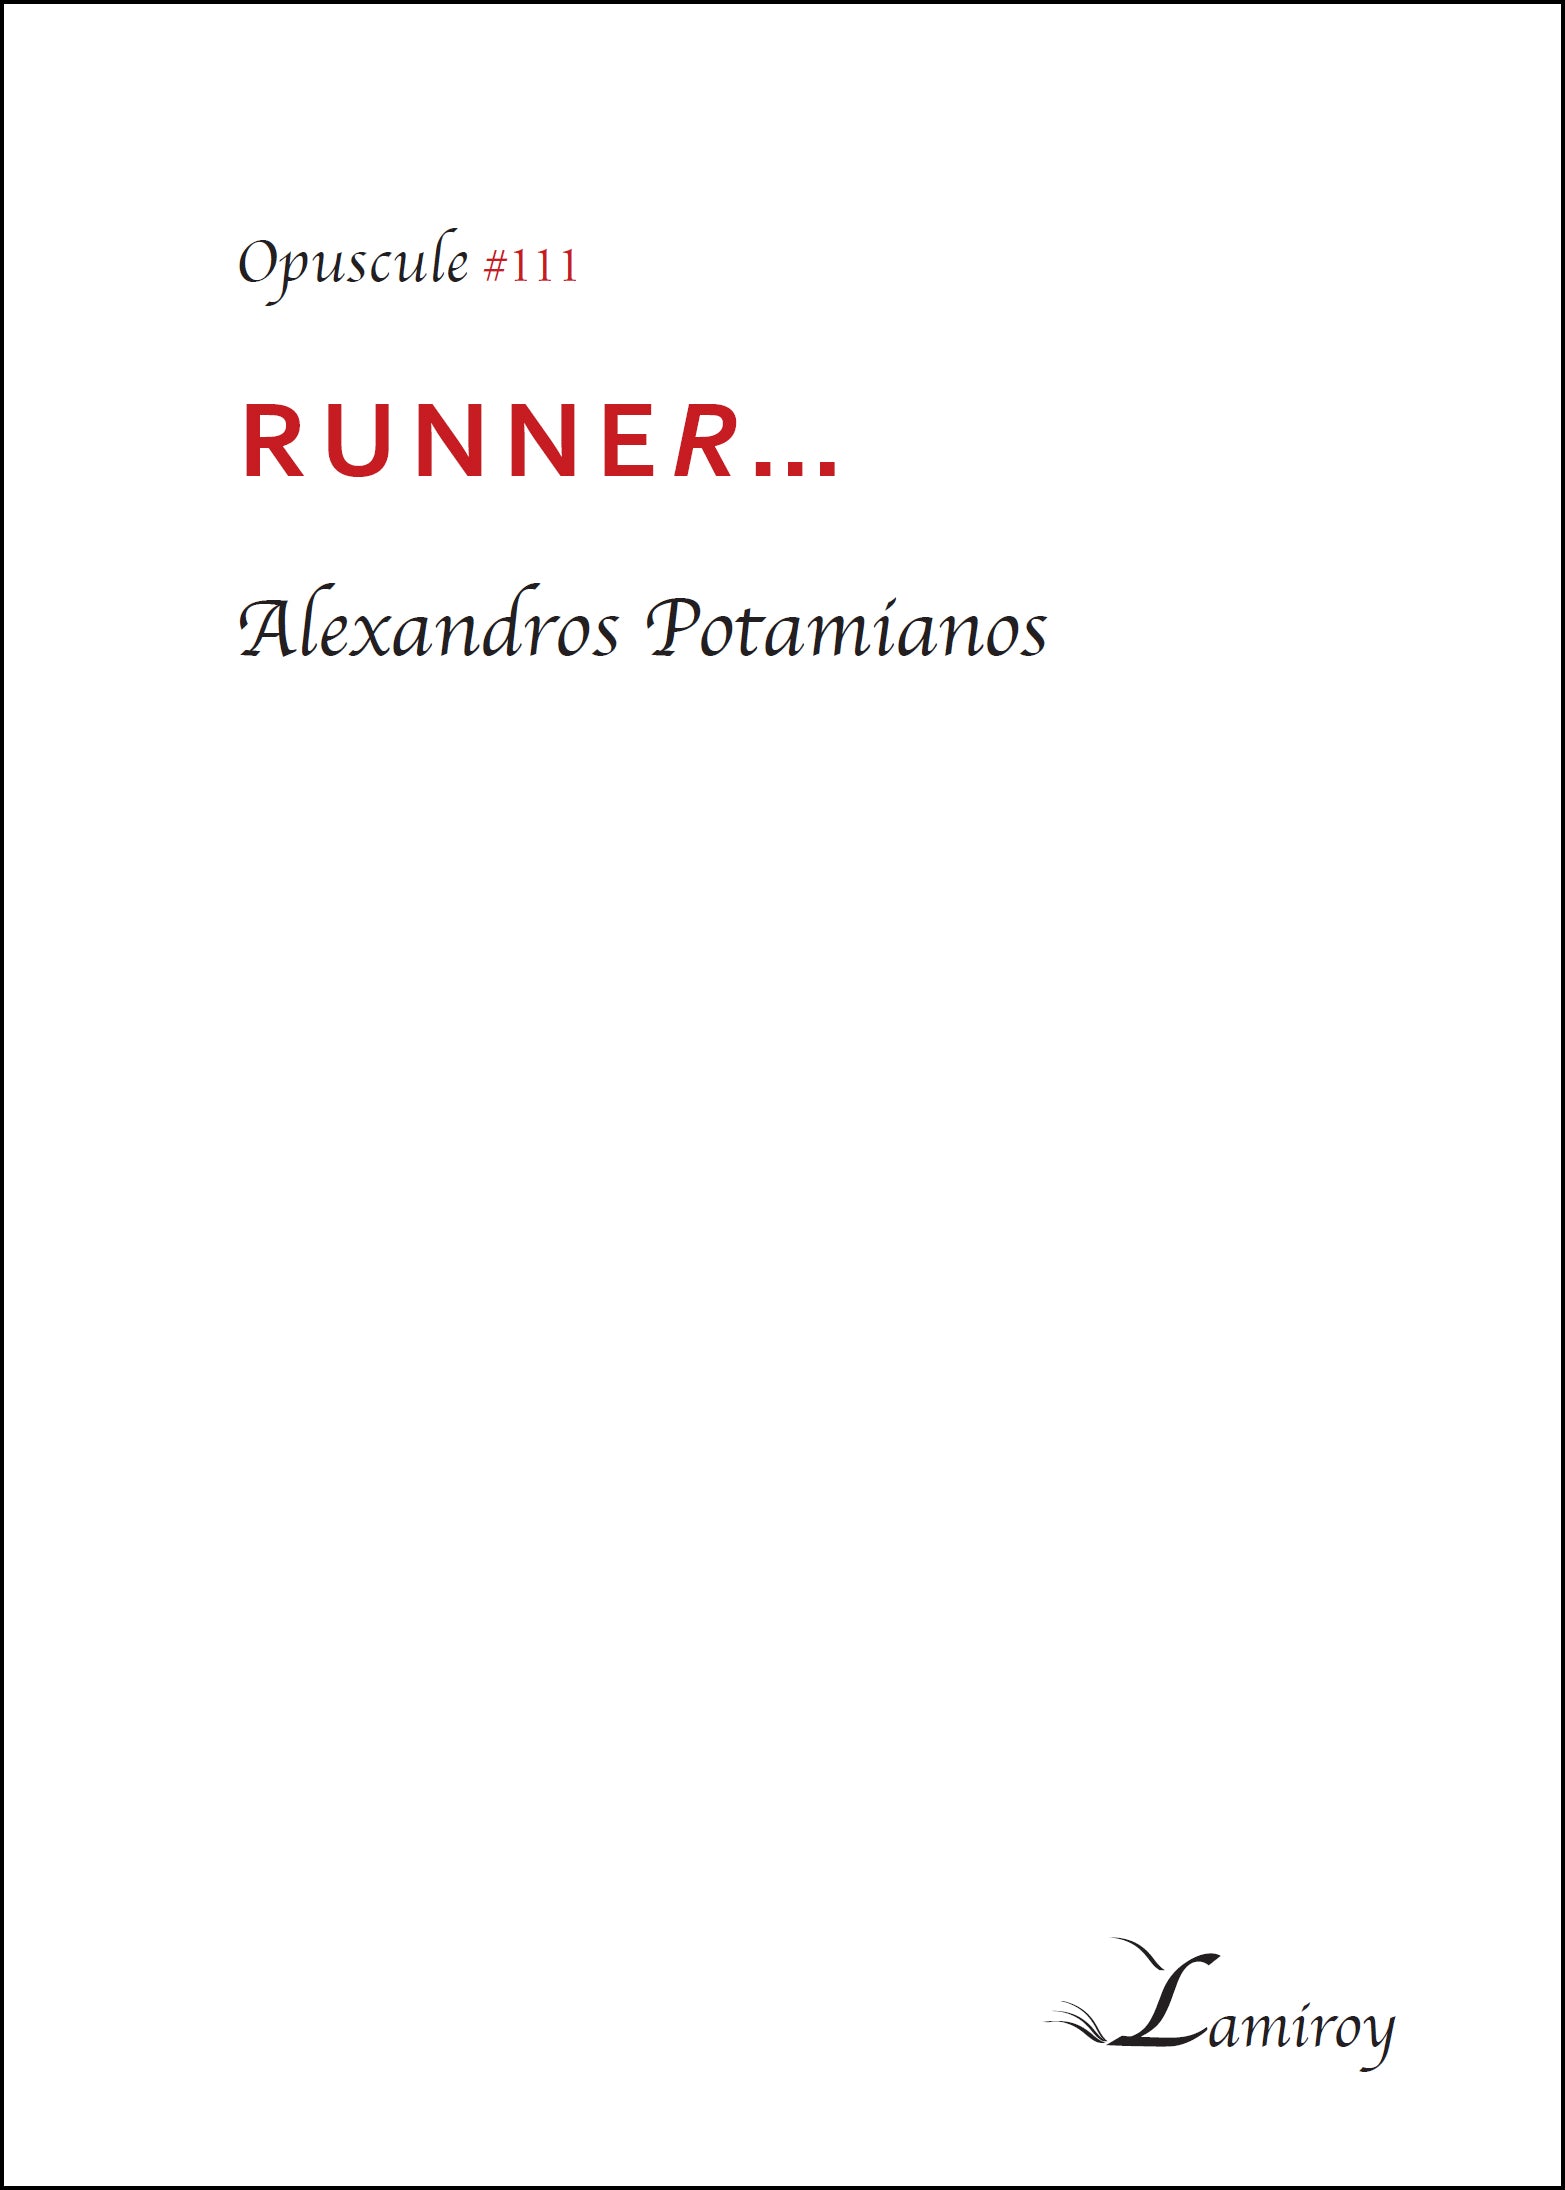 Runner... #111